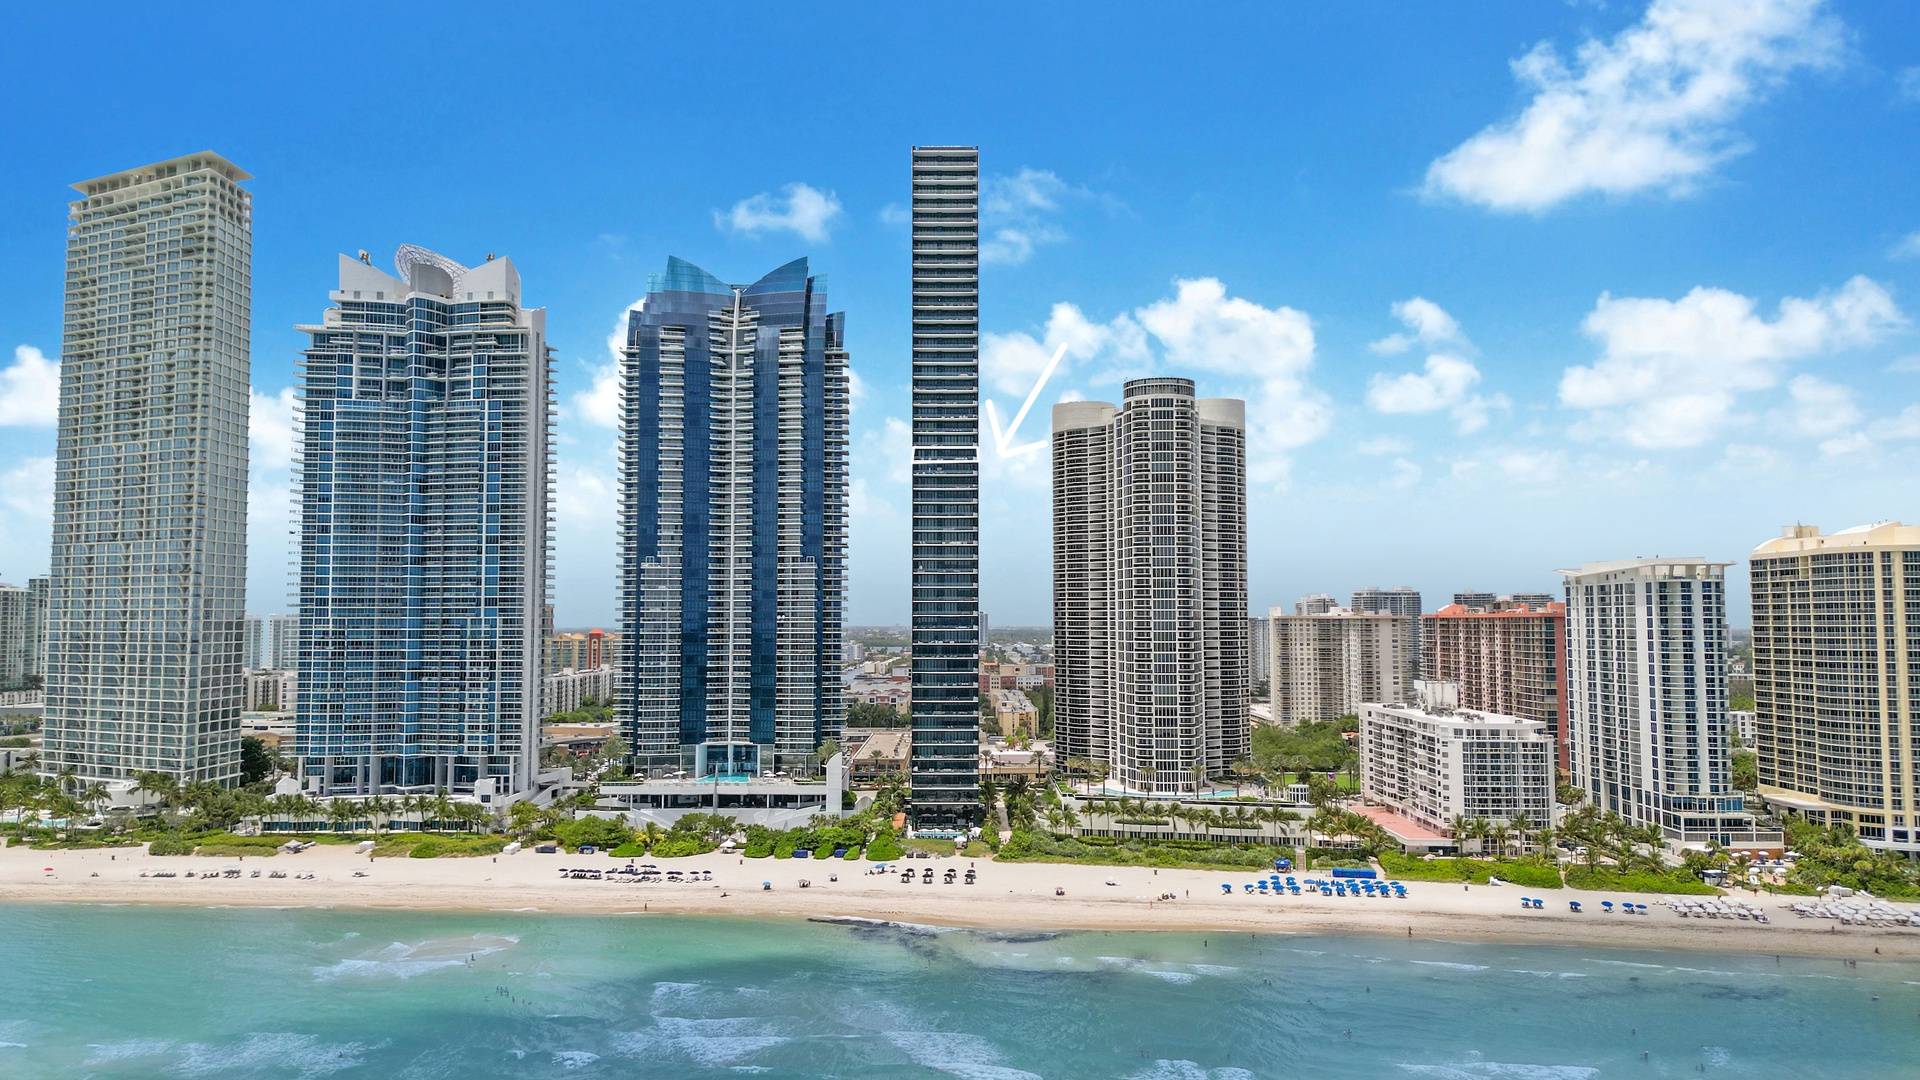 Miami Private Beach Condo| 2 Chambres, 2,5 Salles de bain, 2 places de parking, balcon panoramique 2,042 SF